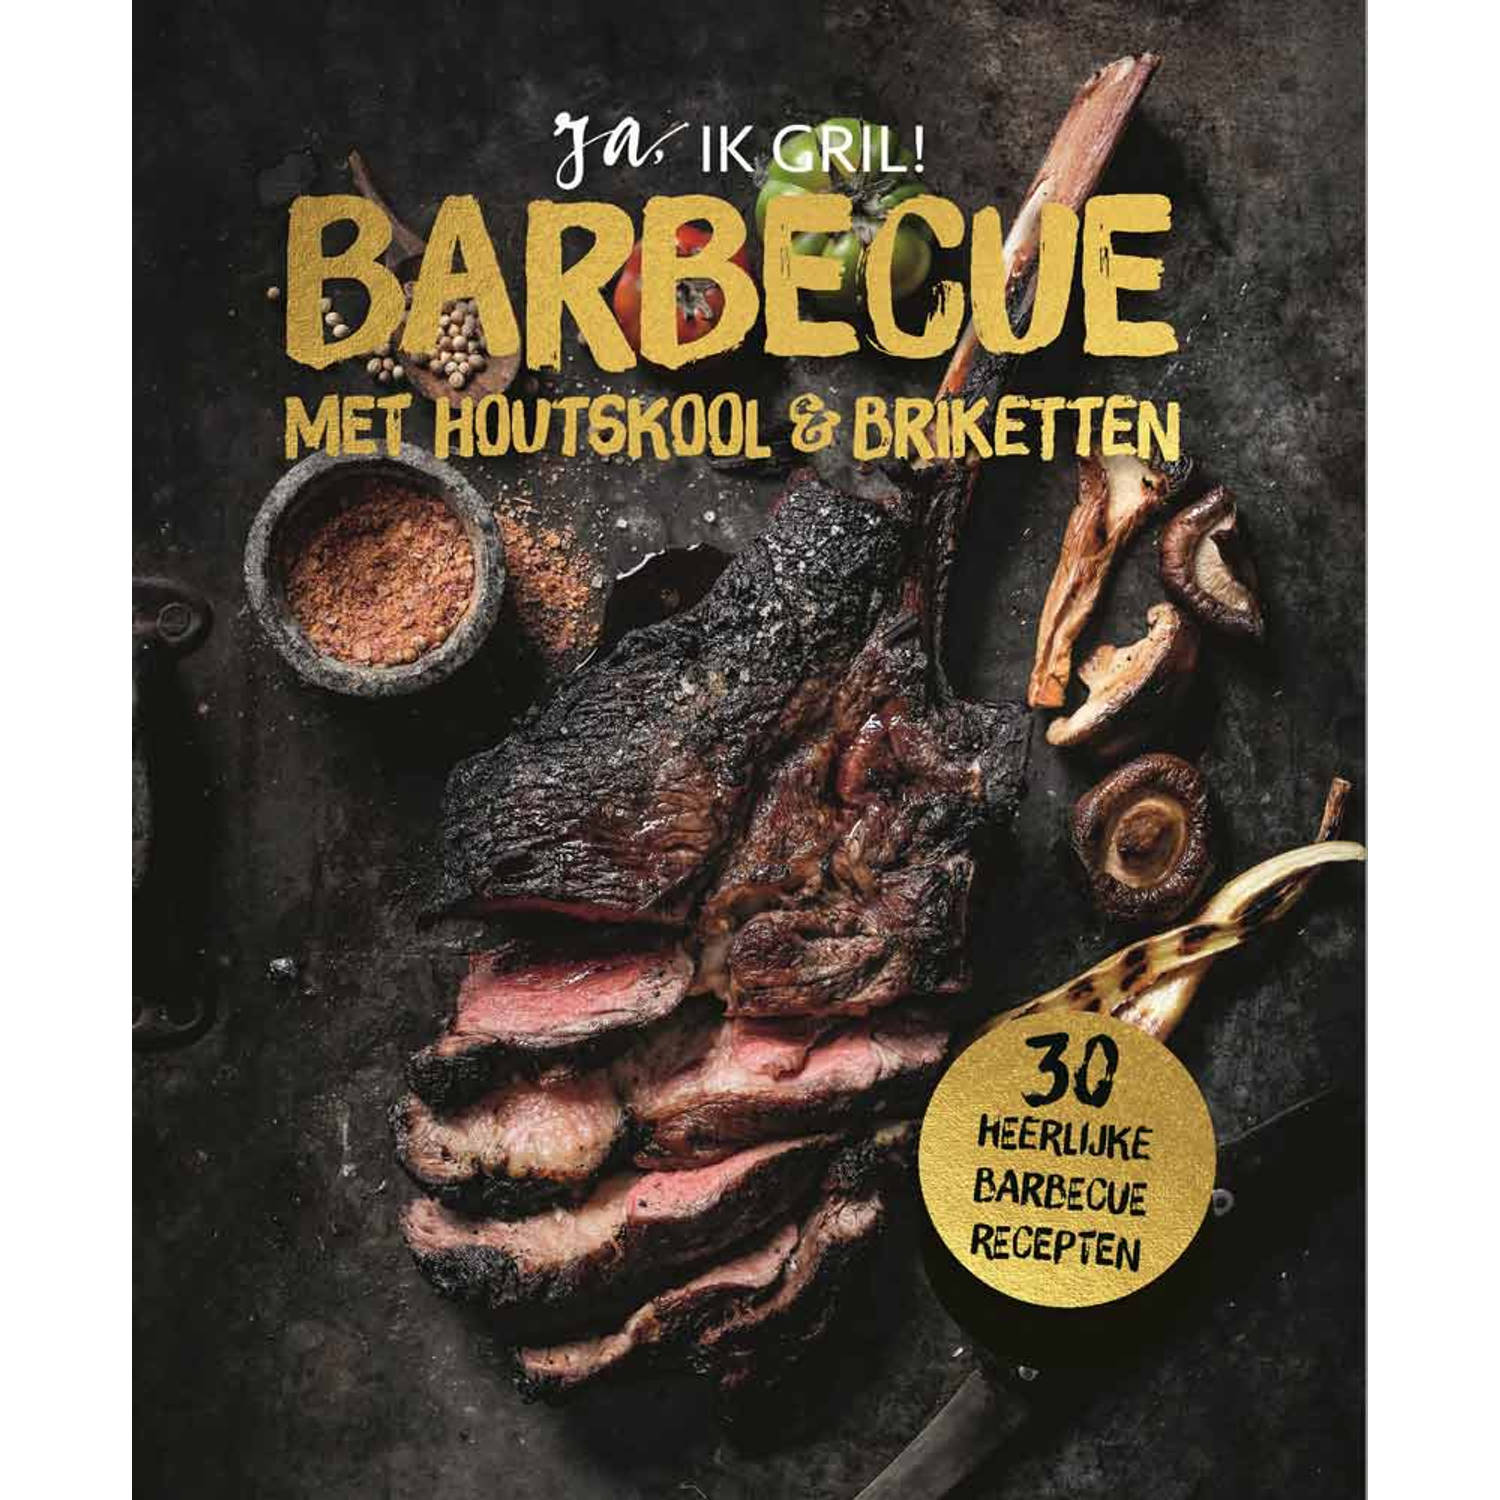 Barbecue met houtskool en briketten. Hardcover